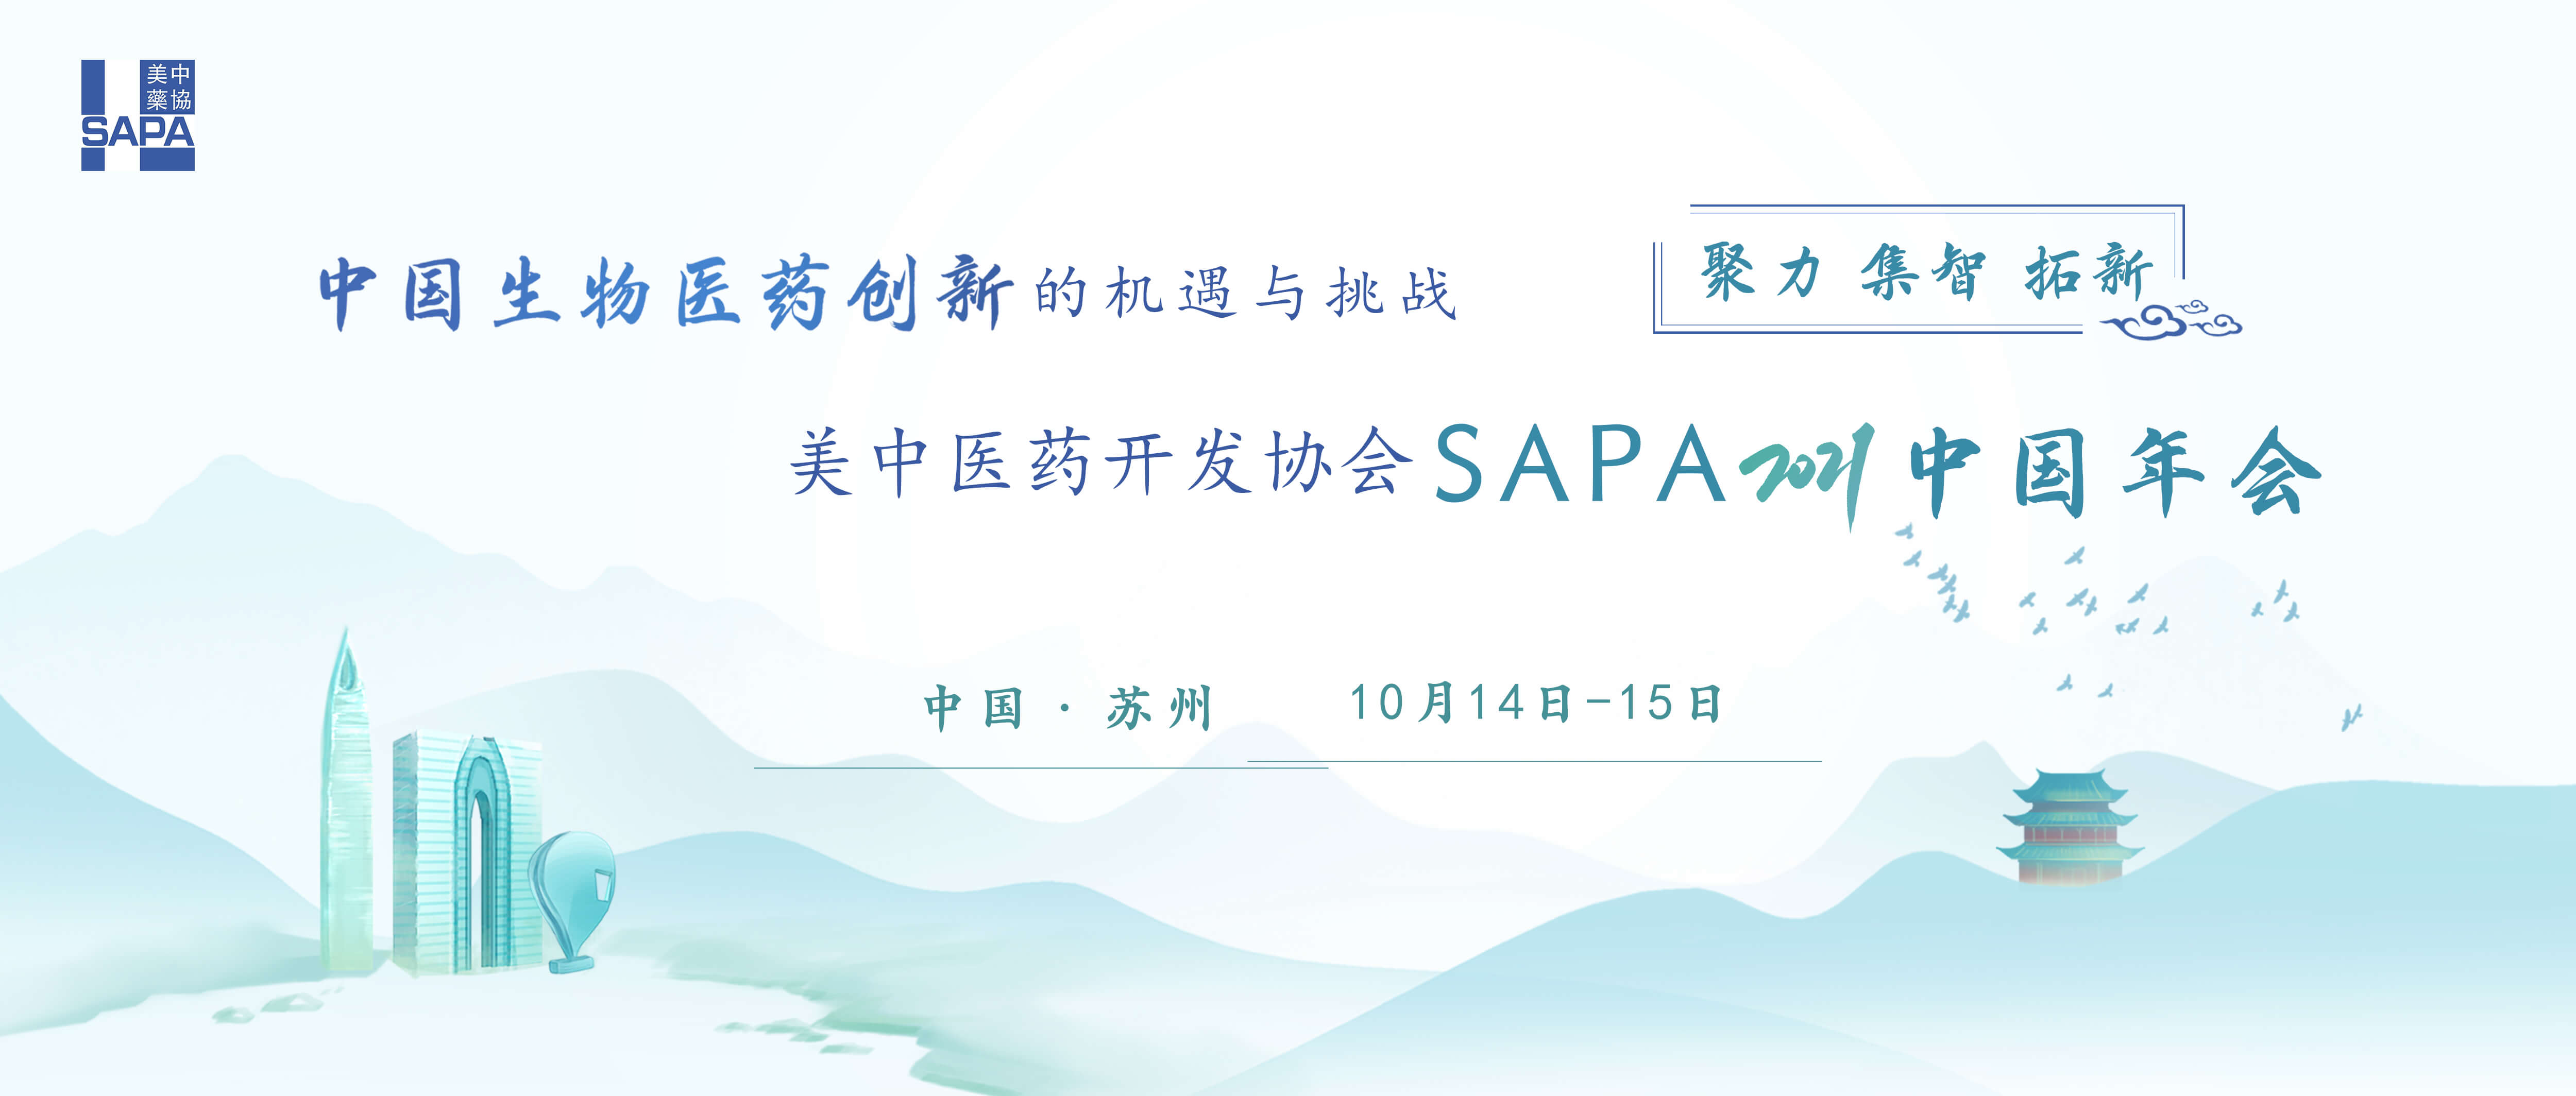 中国生物医药产业发展的机遇与挑战暨美中医药开发协会SAPA2021中国年会